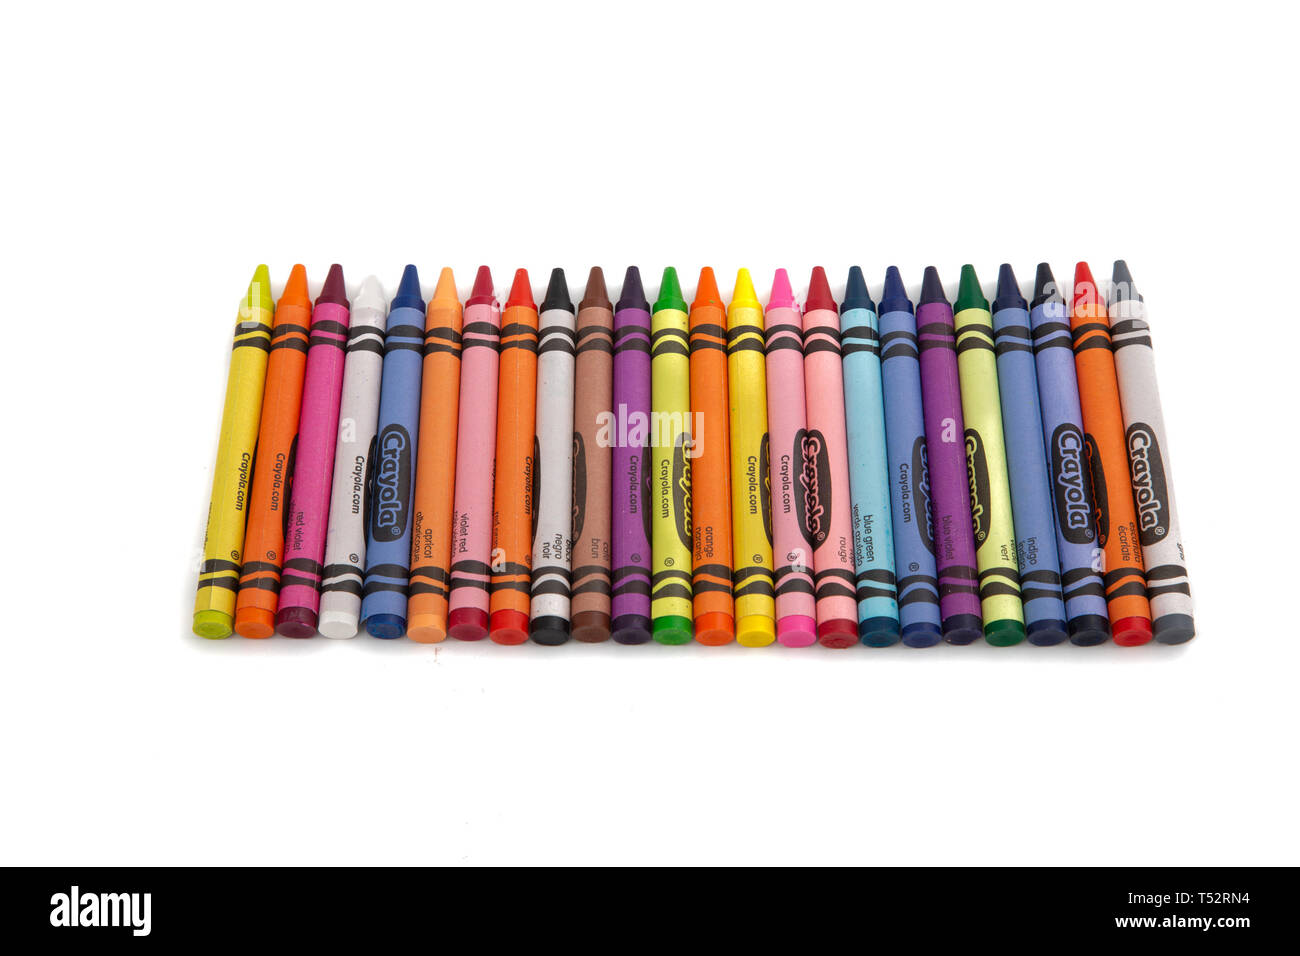 Une ligne de marque Crayola craies sur un fond blanc Banque D'Images